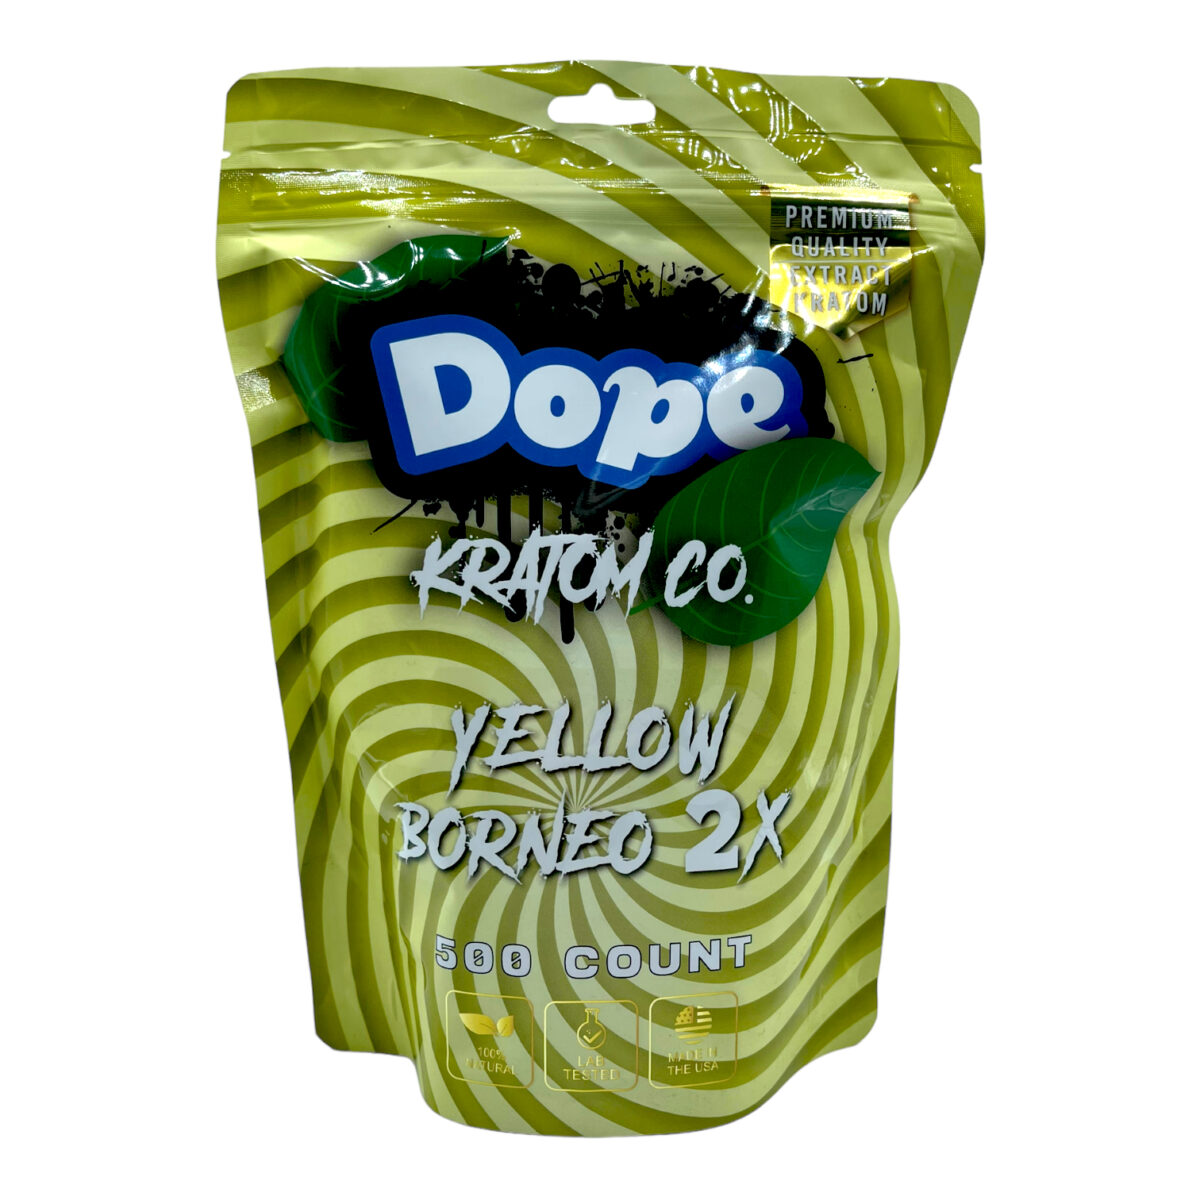 Dope Yellow Borneo 2X Kratom Extract Capsules